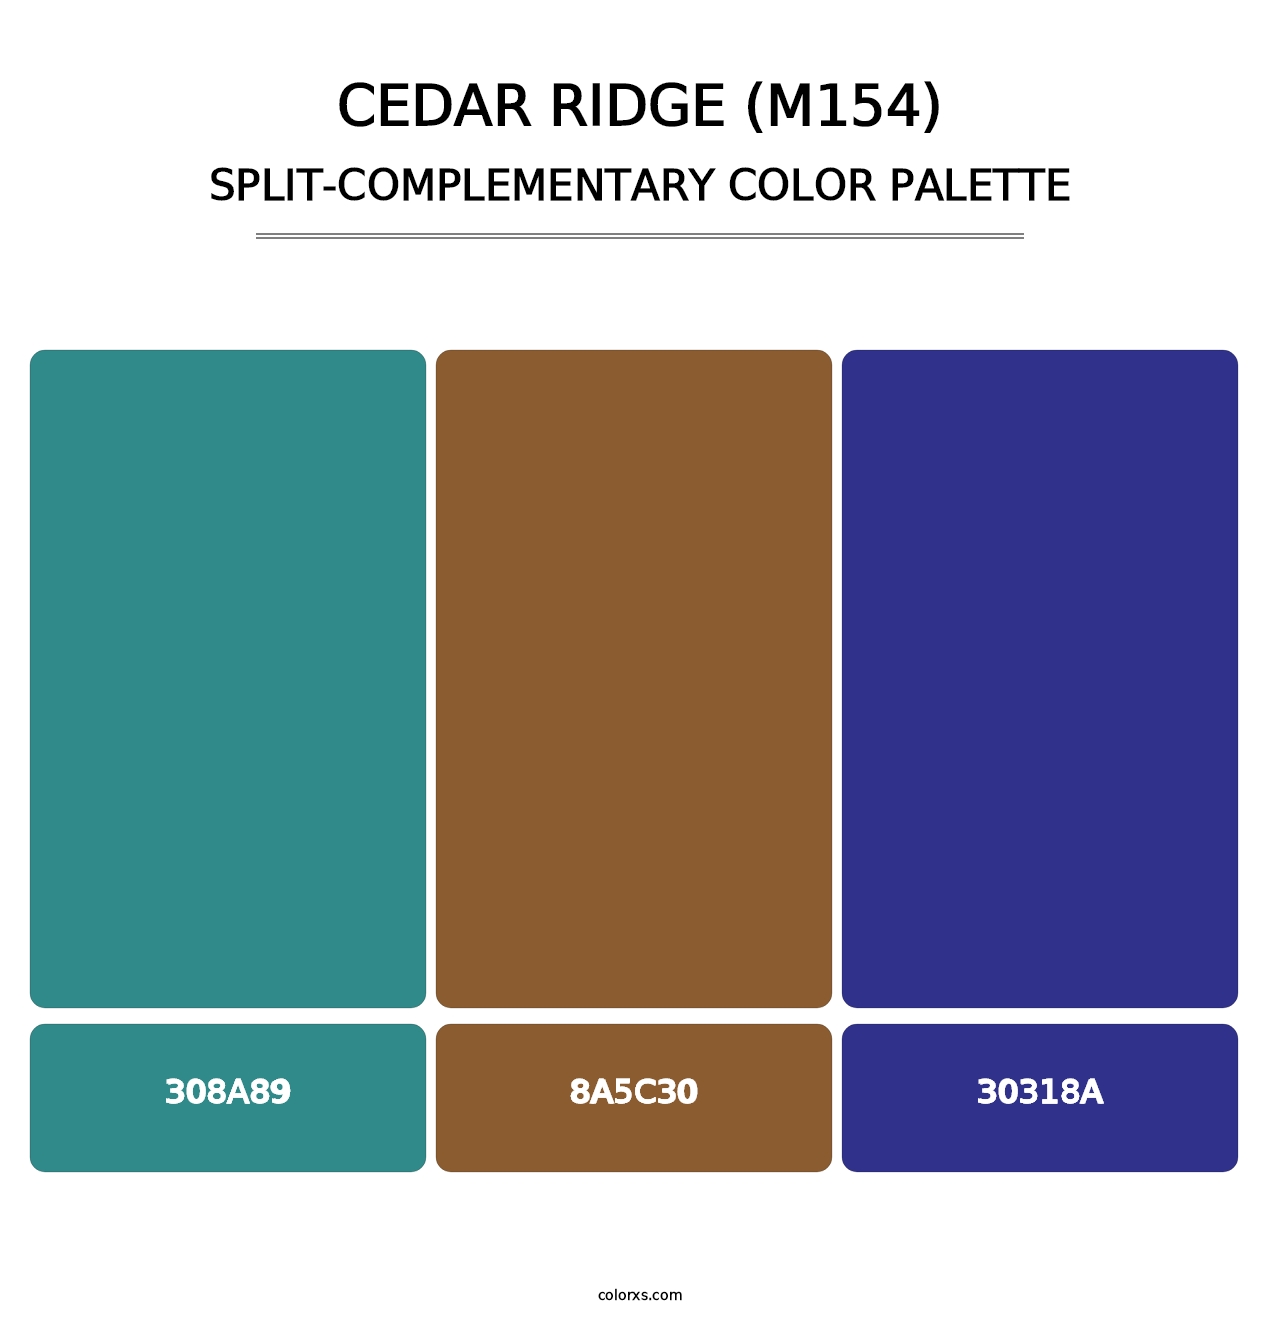 Cedar Ridge (M154) - Split-Complementary Color Palette